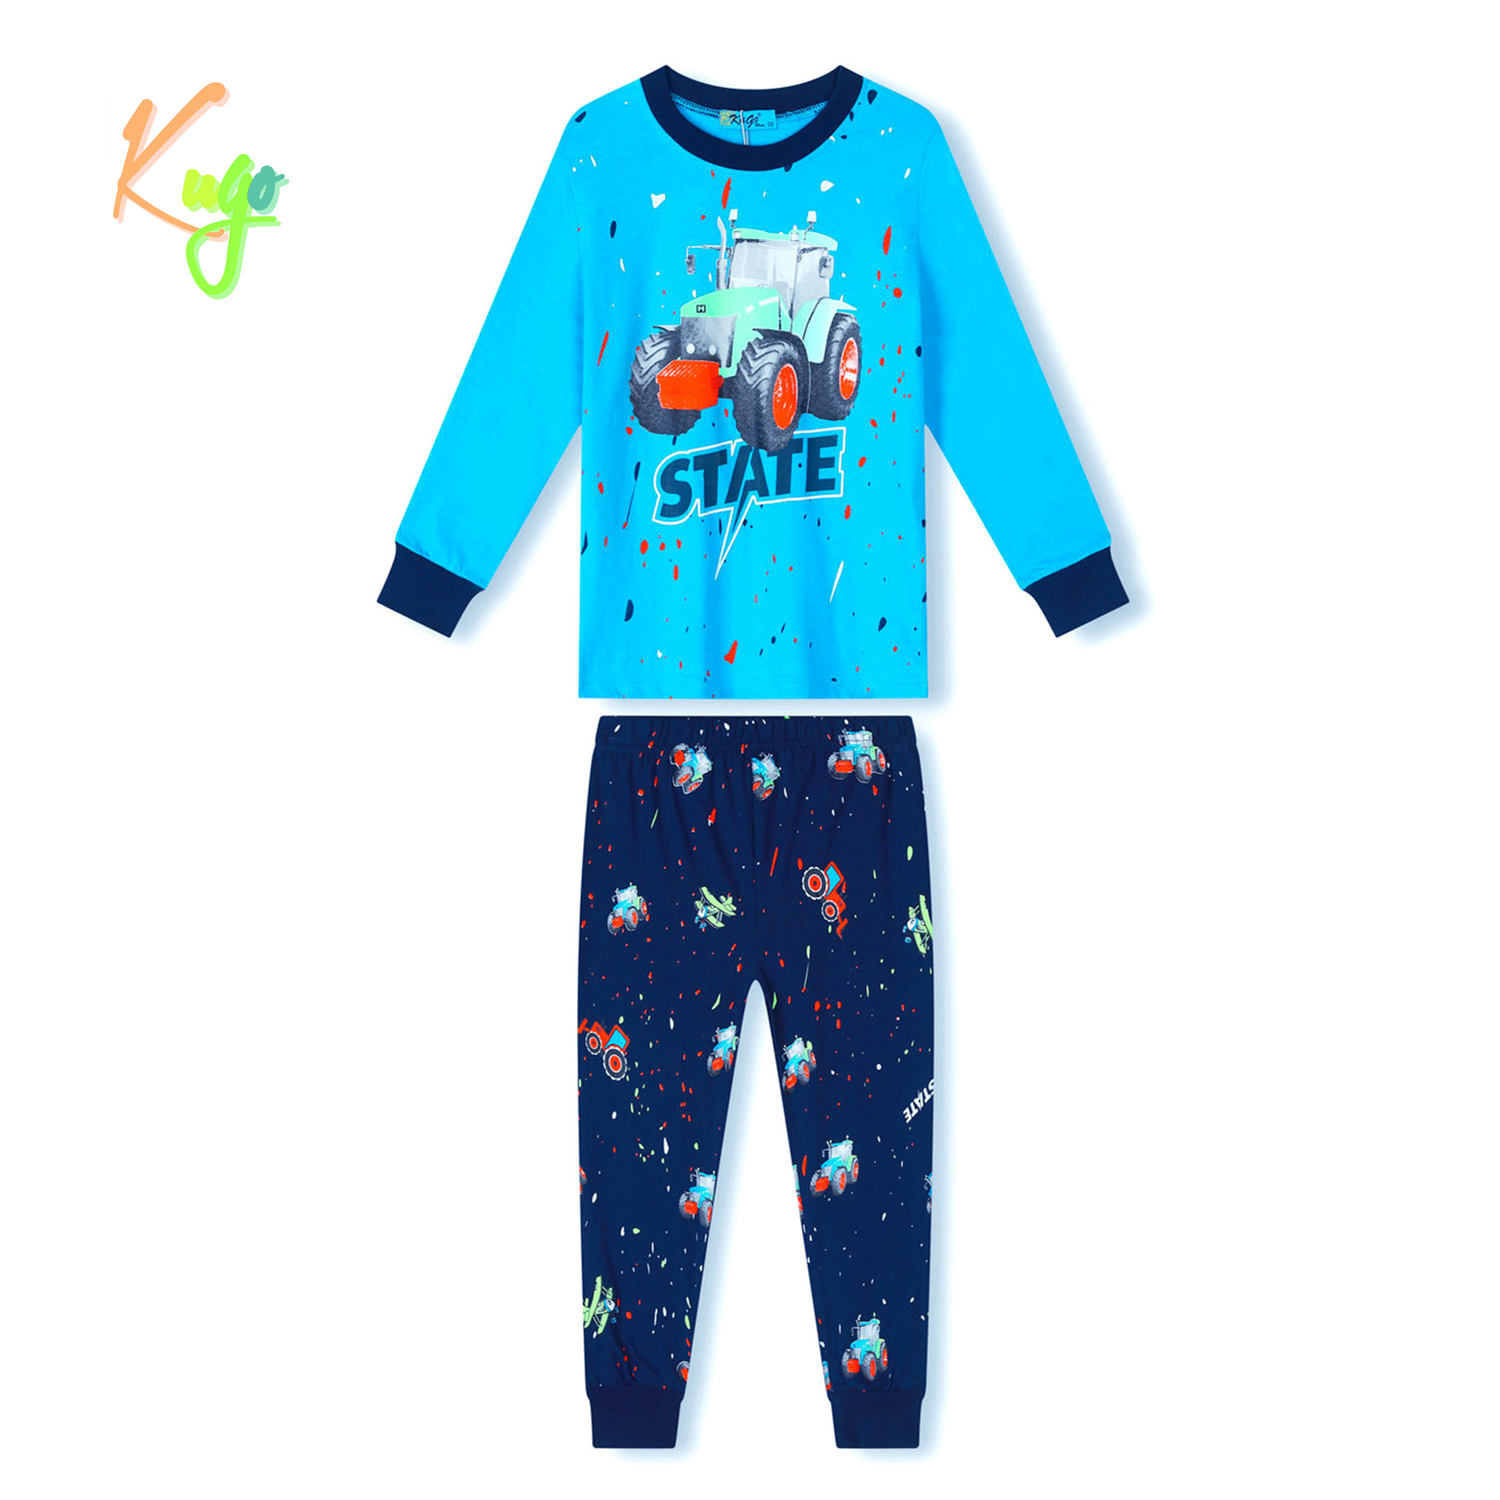 Chlapecké pyžamo - KUGO MP3779, světlonce modrá Barva: Modrá, Velikost: 110